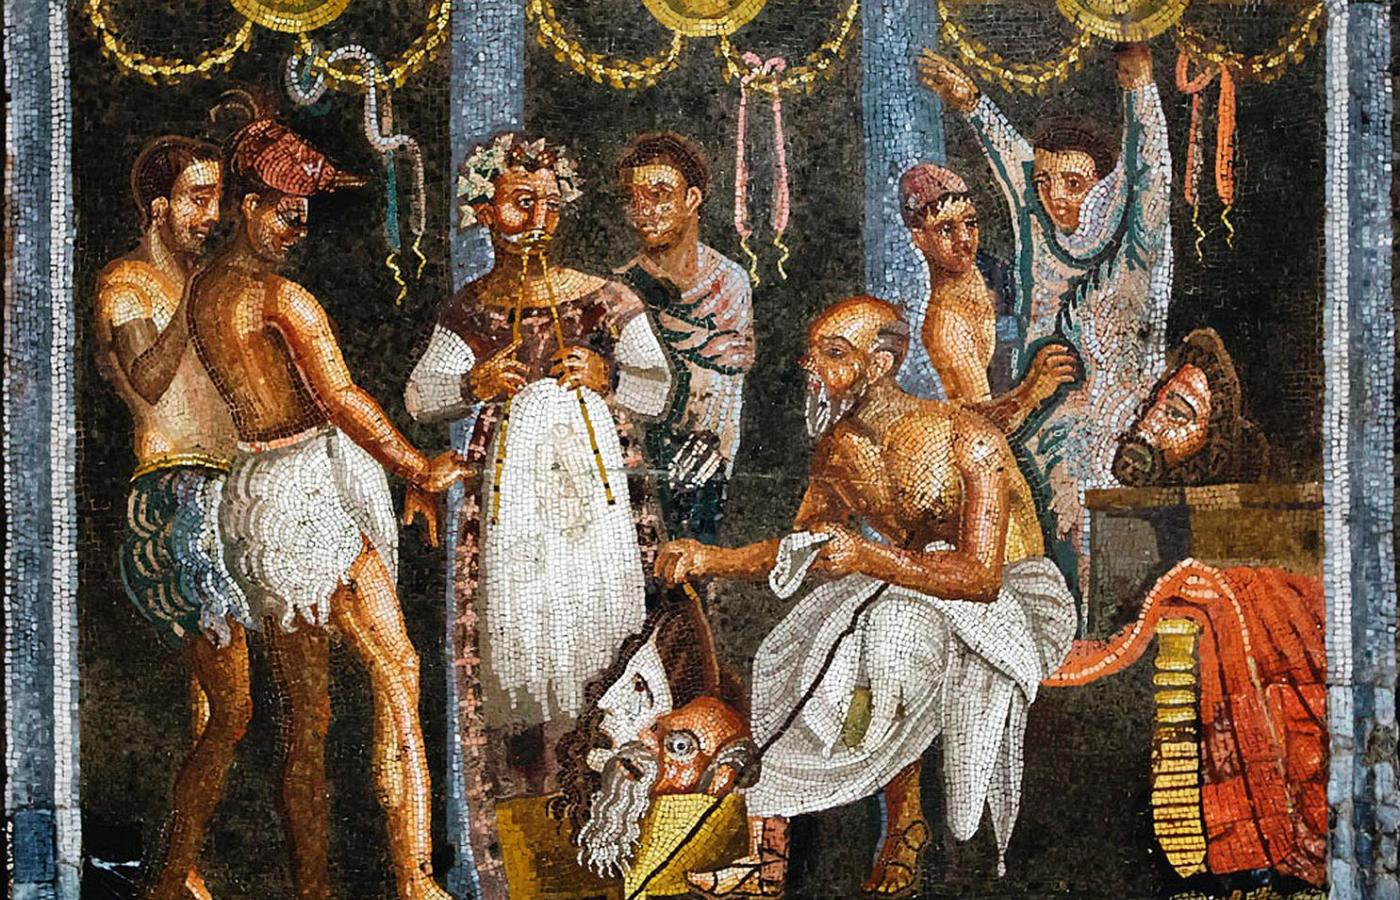 Flecista i aktorzy w strojach z koziej skóry przygotowujący się do występu w teatrze; mozaika z I w. n.e.